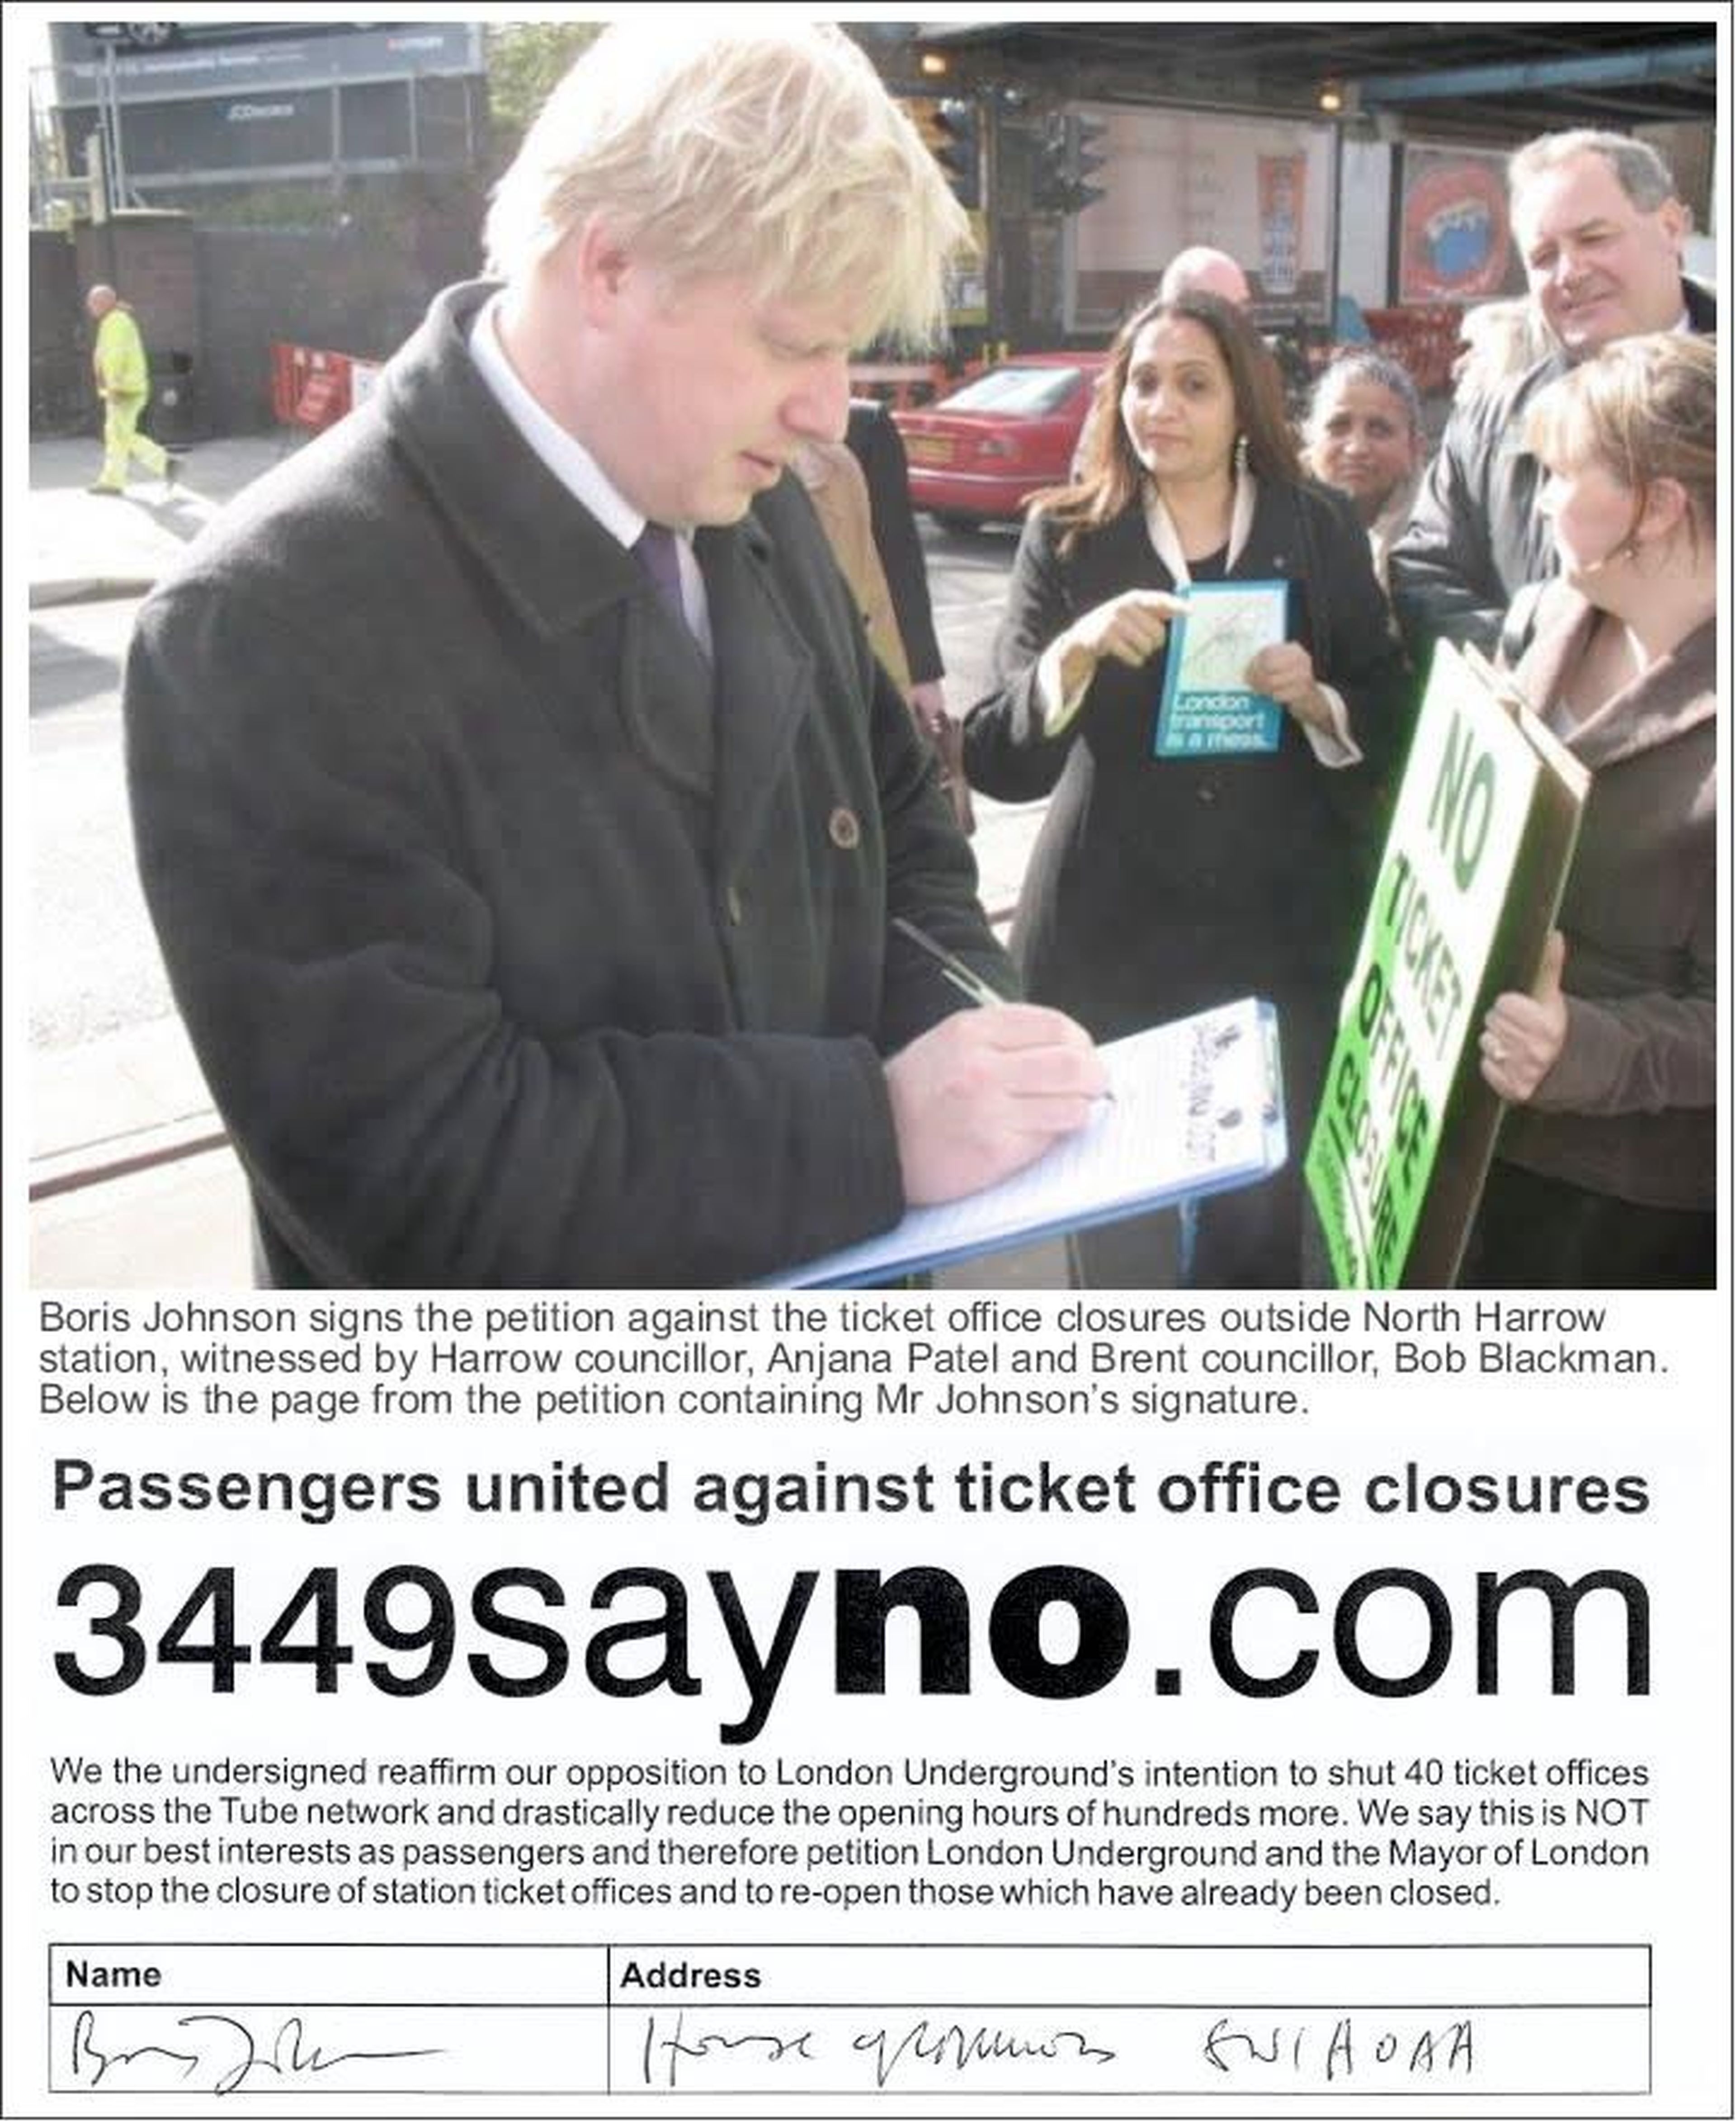 Boris Johnson's 2008 campaign pledge